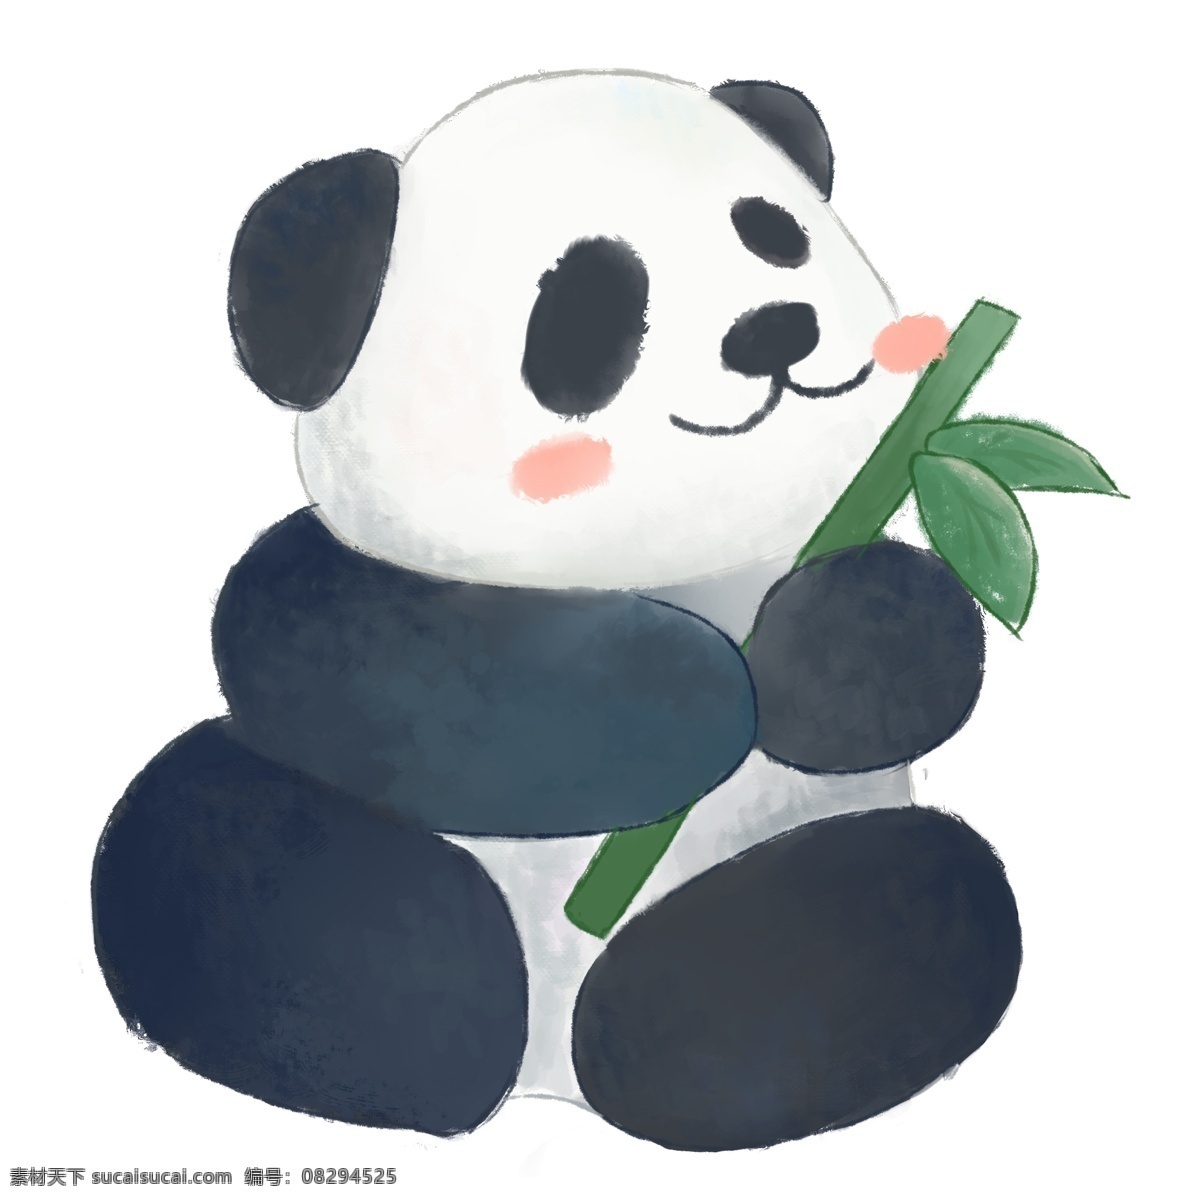 守护 卡通 熊猫 原创 元素 竹子 可爱 中国元素 国宝 绘画 原创元素 设计元素